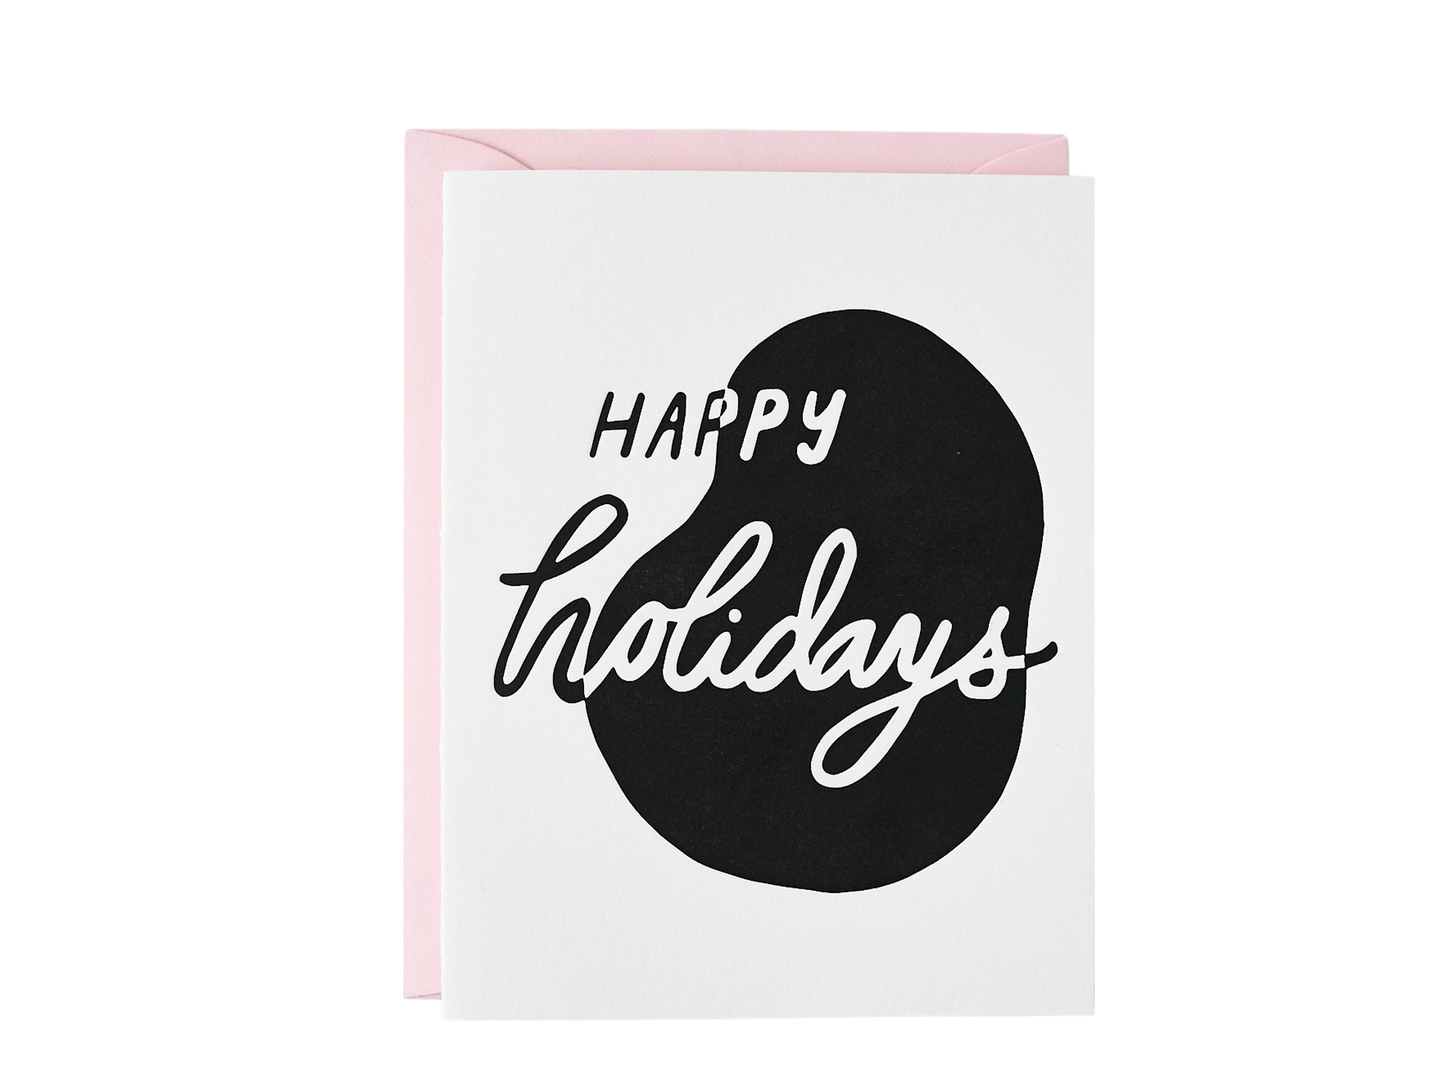 Happy Holidays Modern Card